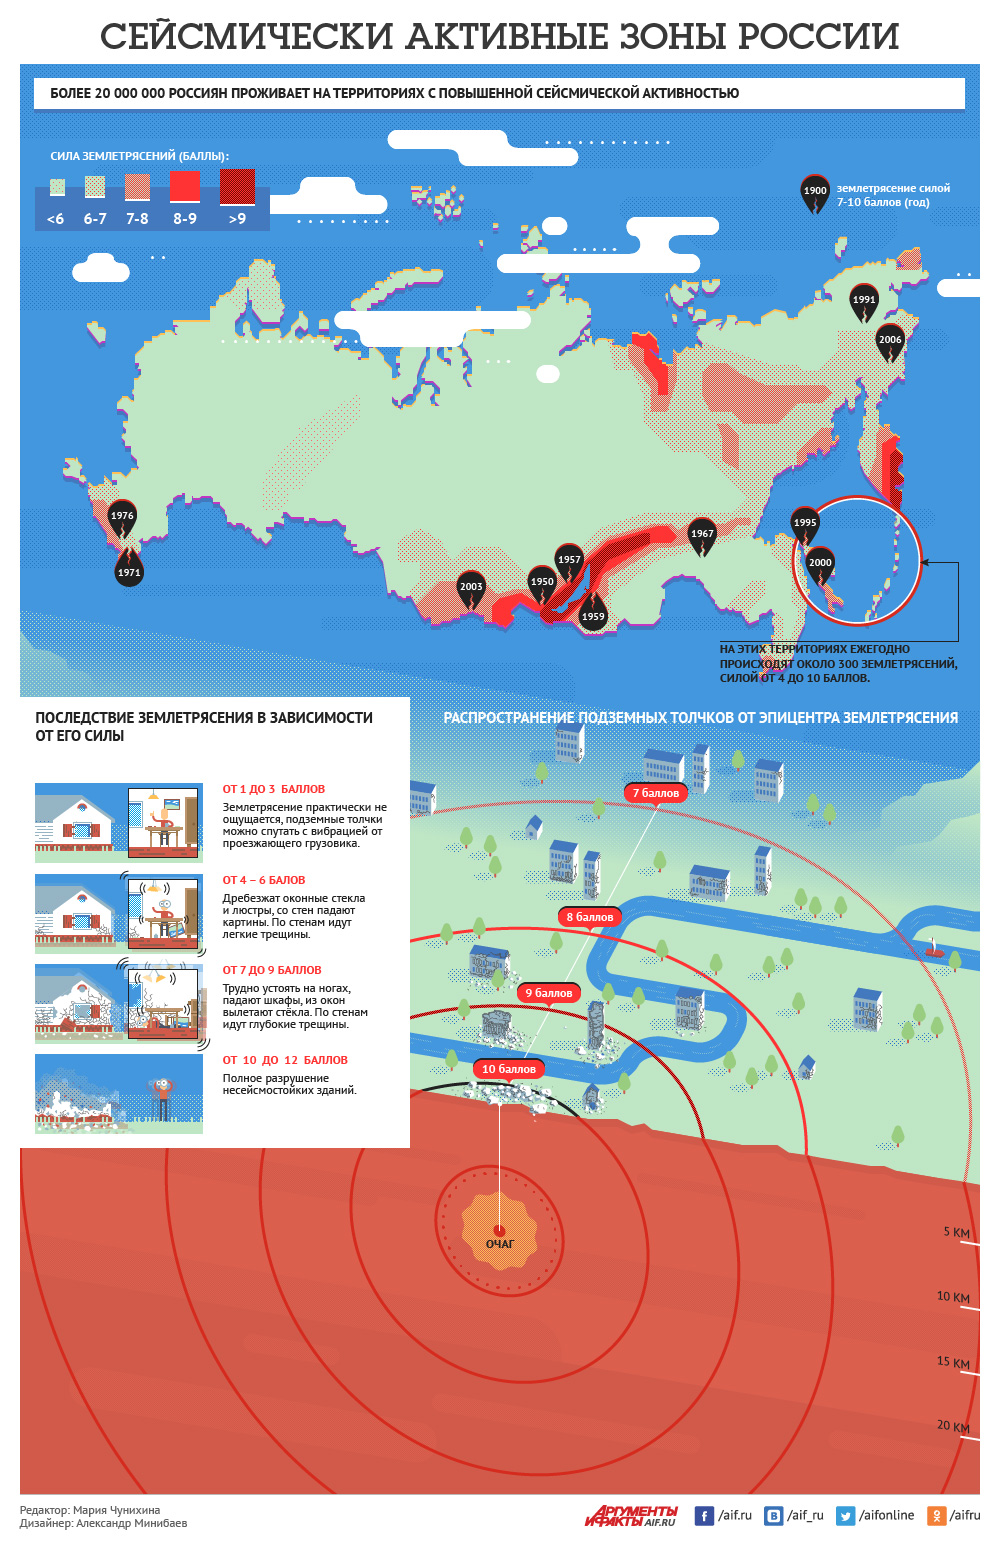 Страны в которых часто происходят сильные землетрясения. Землетрясение инфографика. Сейсмические активные зоны. Сейсмические зоны РФ. Сейсмические активные зоны России.